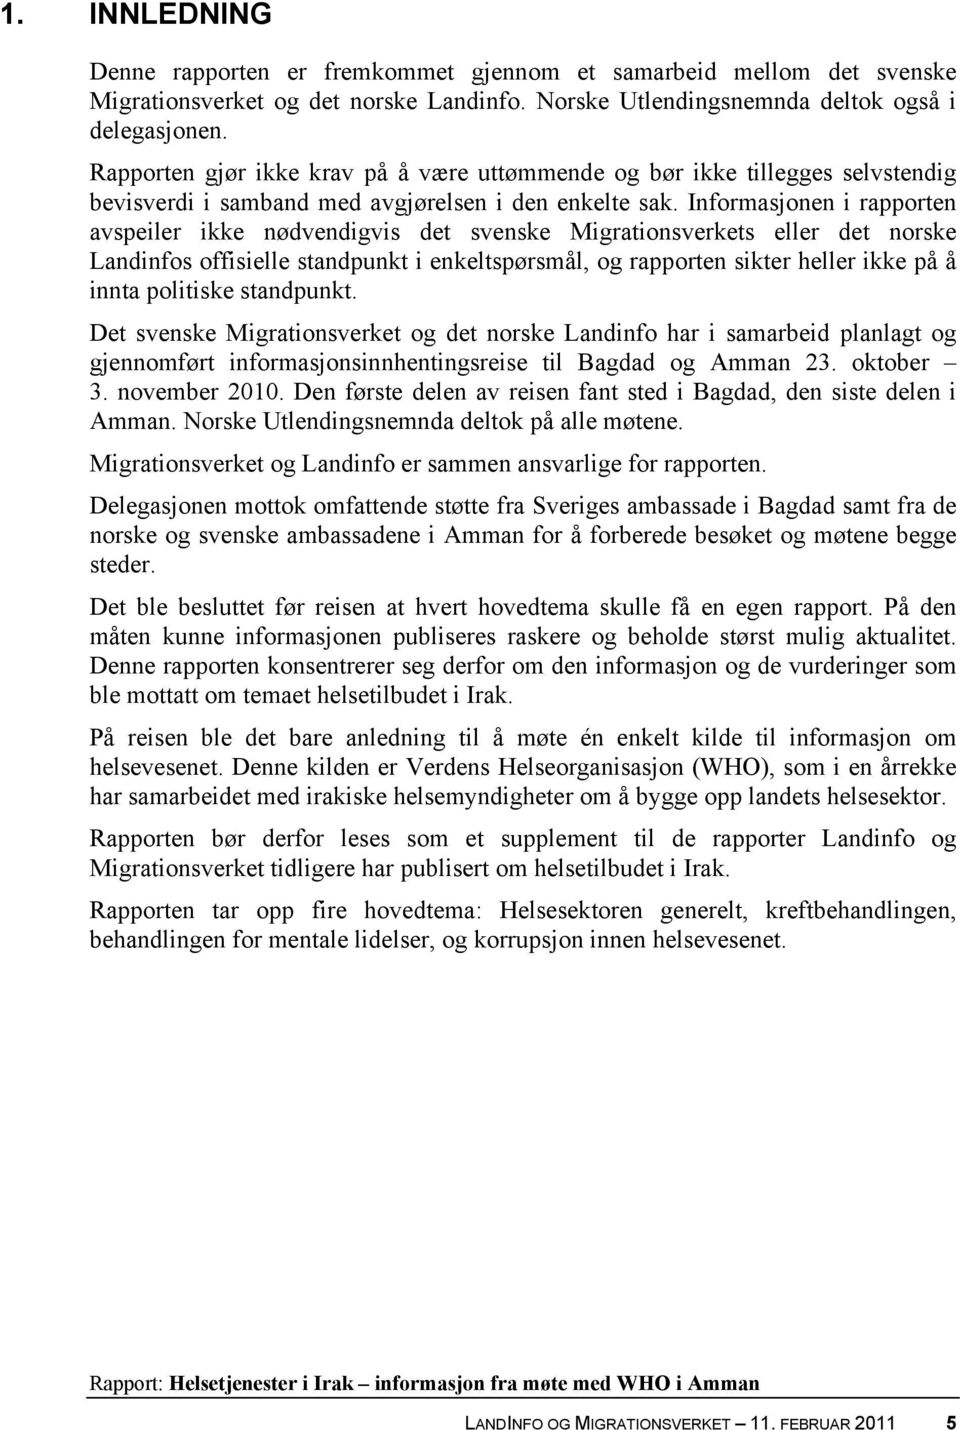 Informasjonen i rapporten avspeiler ikke nødvendigvis det svenske Migrationsverkets eller det norske Landinfos offisielle standpunkt i enkeltspørsmål, og rapporten sikter heller ikke på å innta